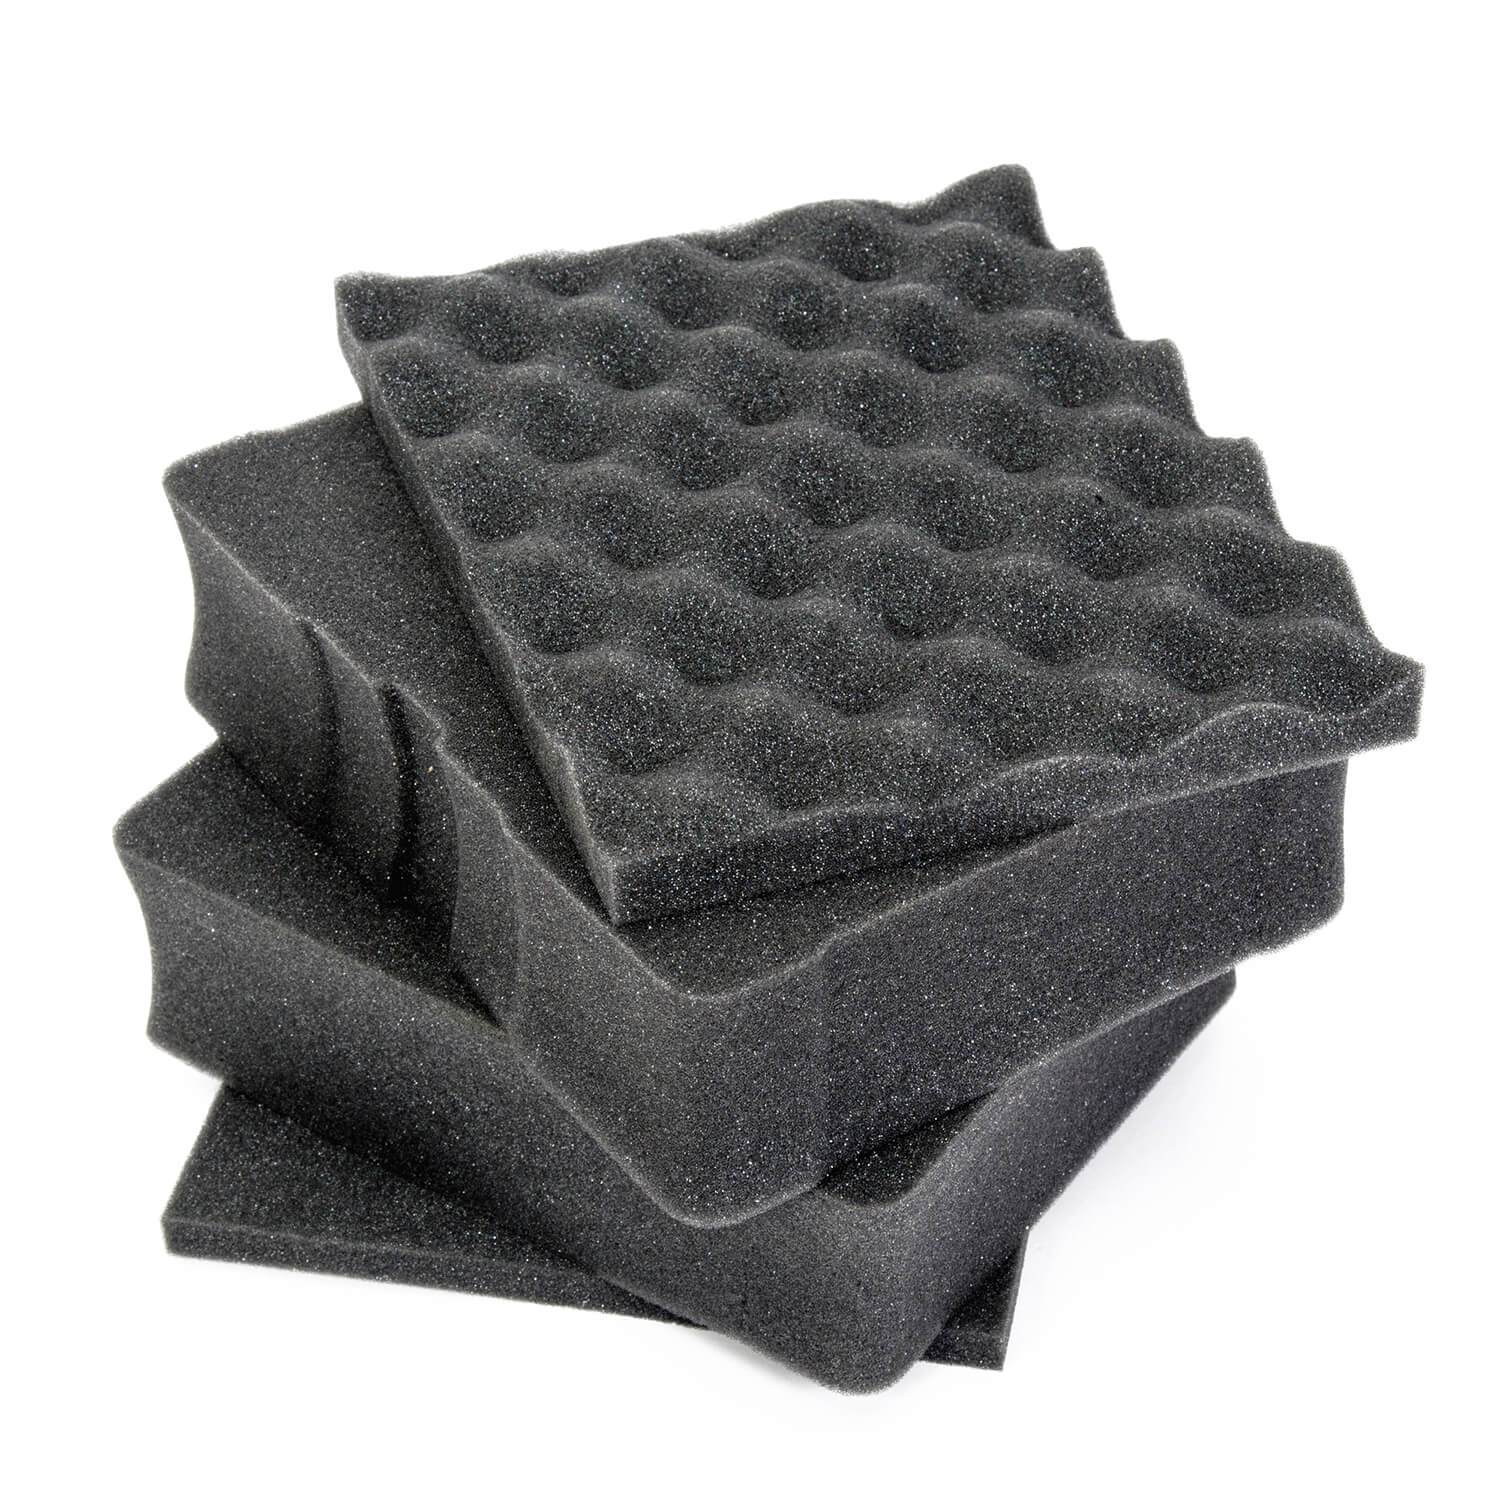 Cubed Foam Insert for Nanuk 910 – Hard Case HQ